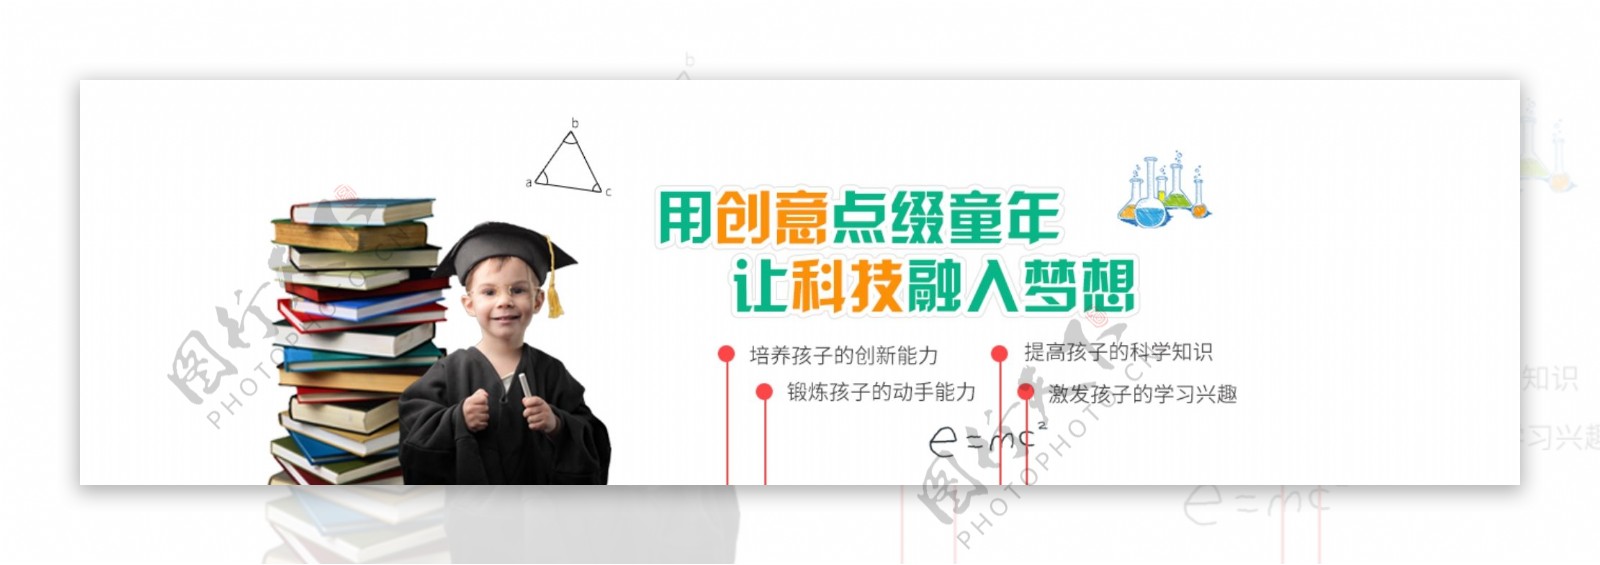 教育培训网站banner